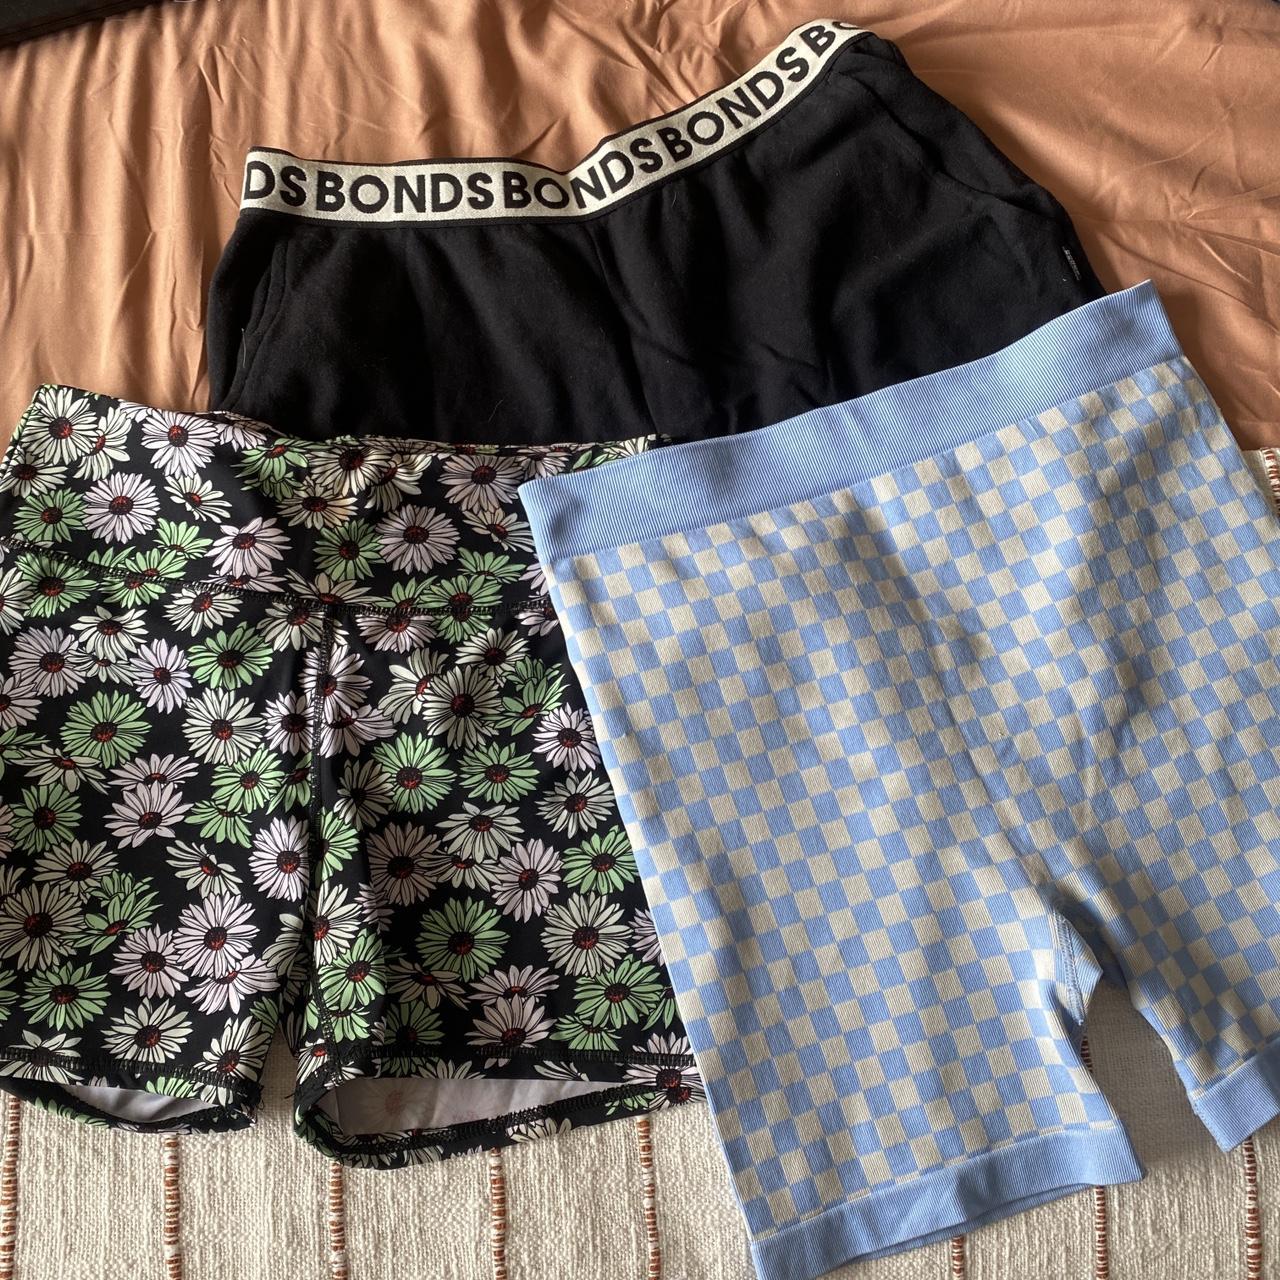 Shorts bundle Floral cotton on shorts size L -... - Depop